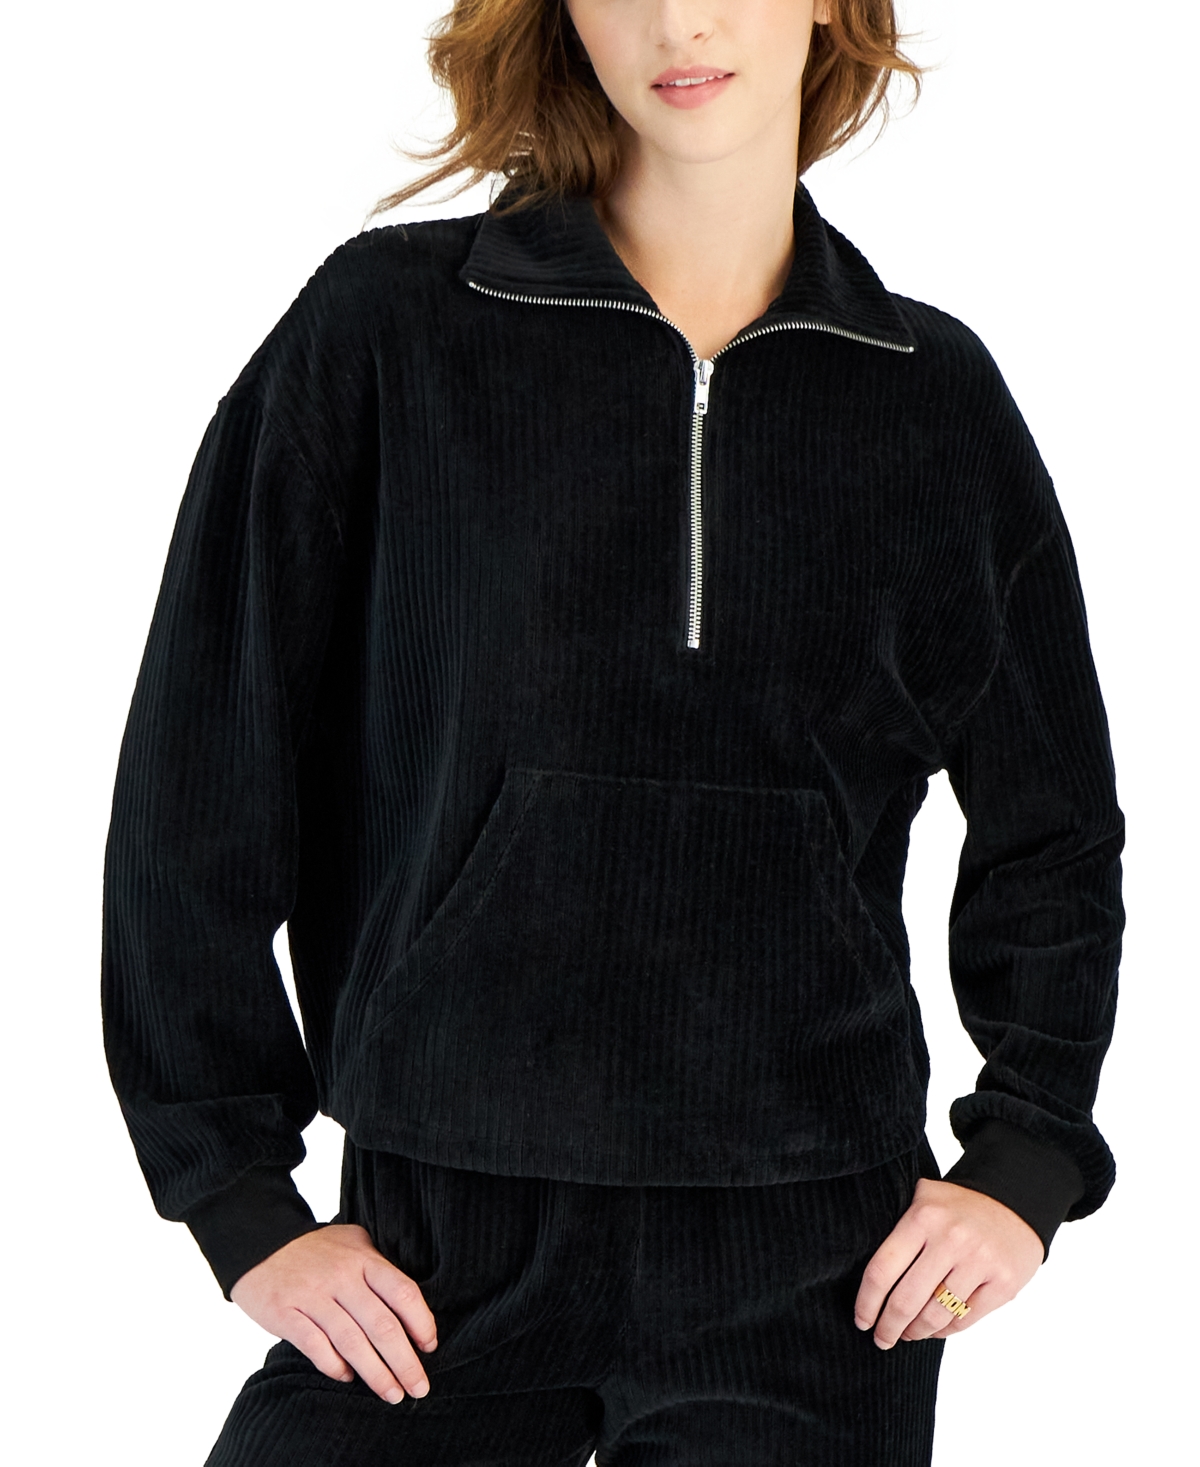 Juniors' Corduroy Half-Zip Sweatshirt - Black